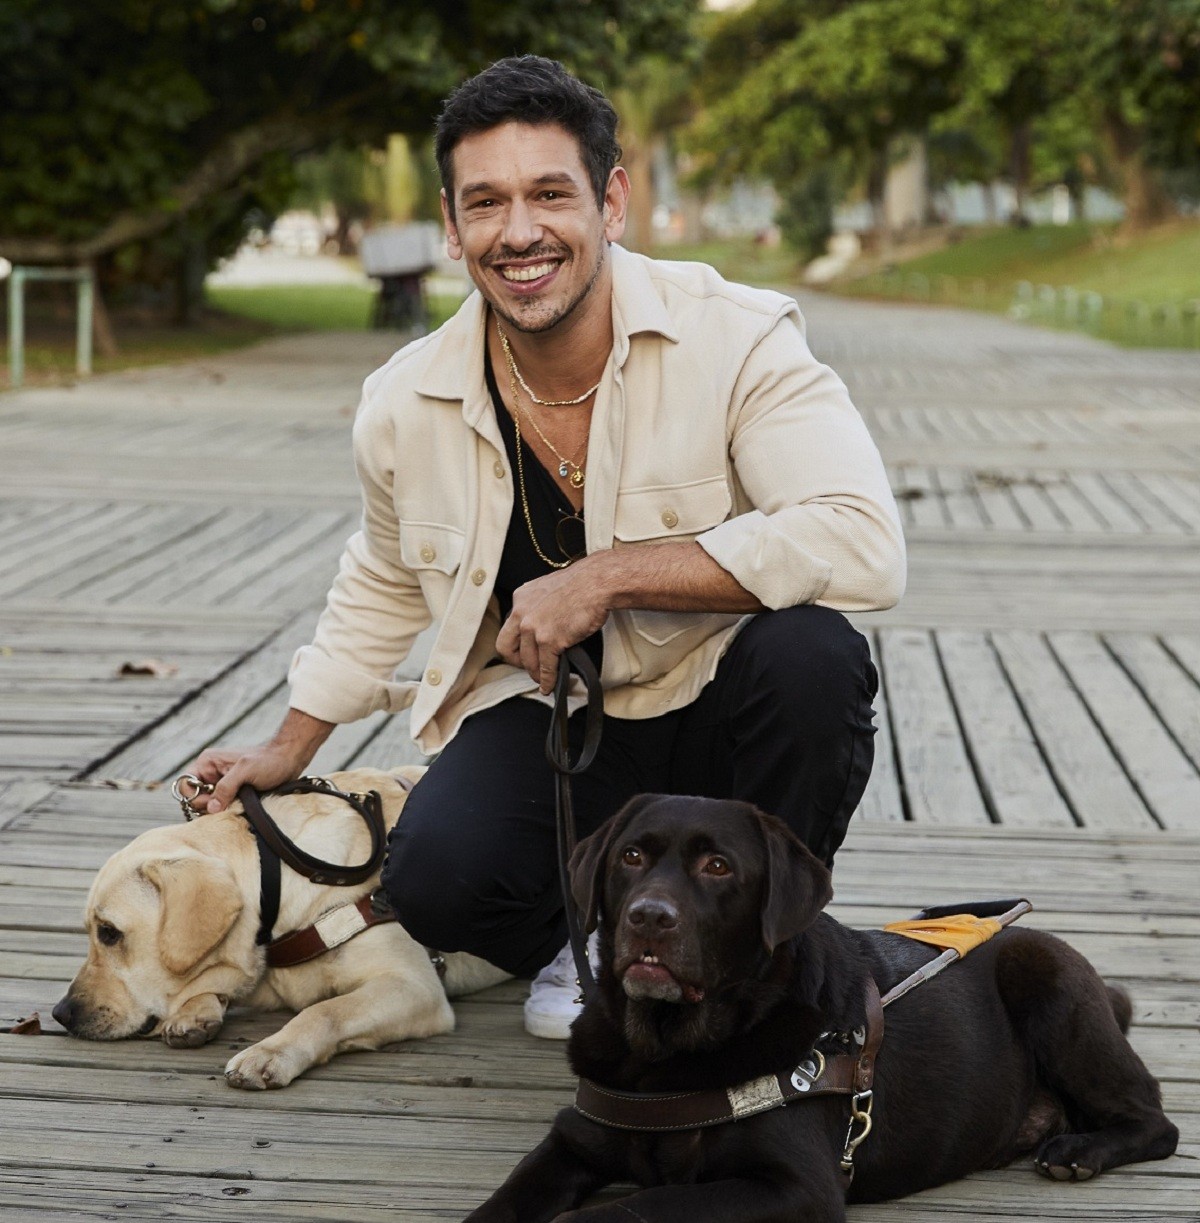 O ator e apresentador João Vicente de Castro é tutor de três cães: Jude, Chica e Milka (Foto: Guto Costa/ Divulgação )